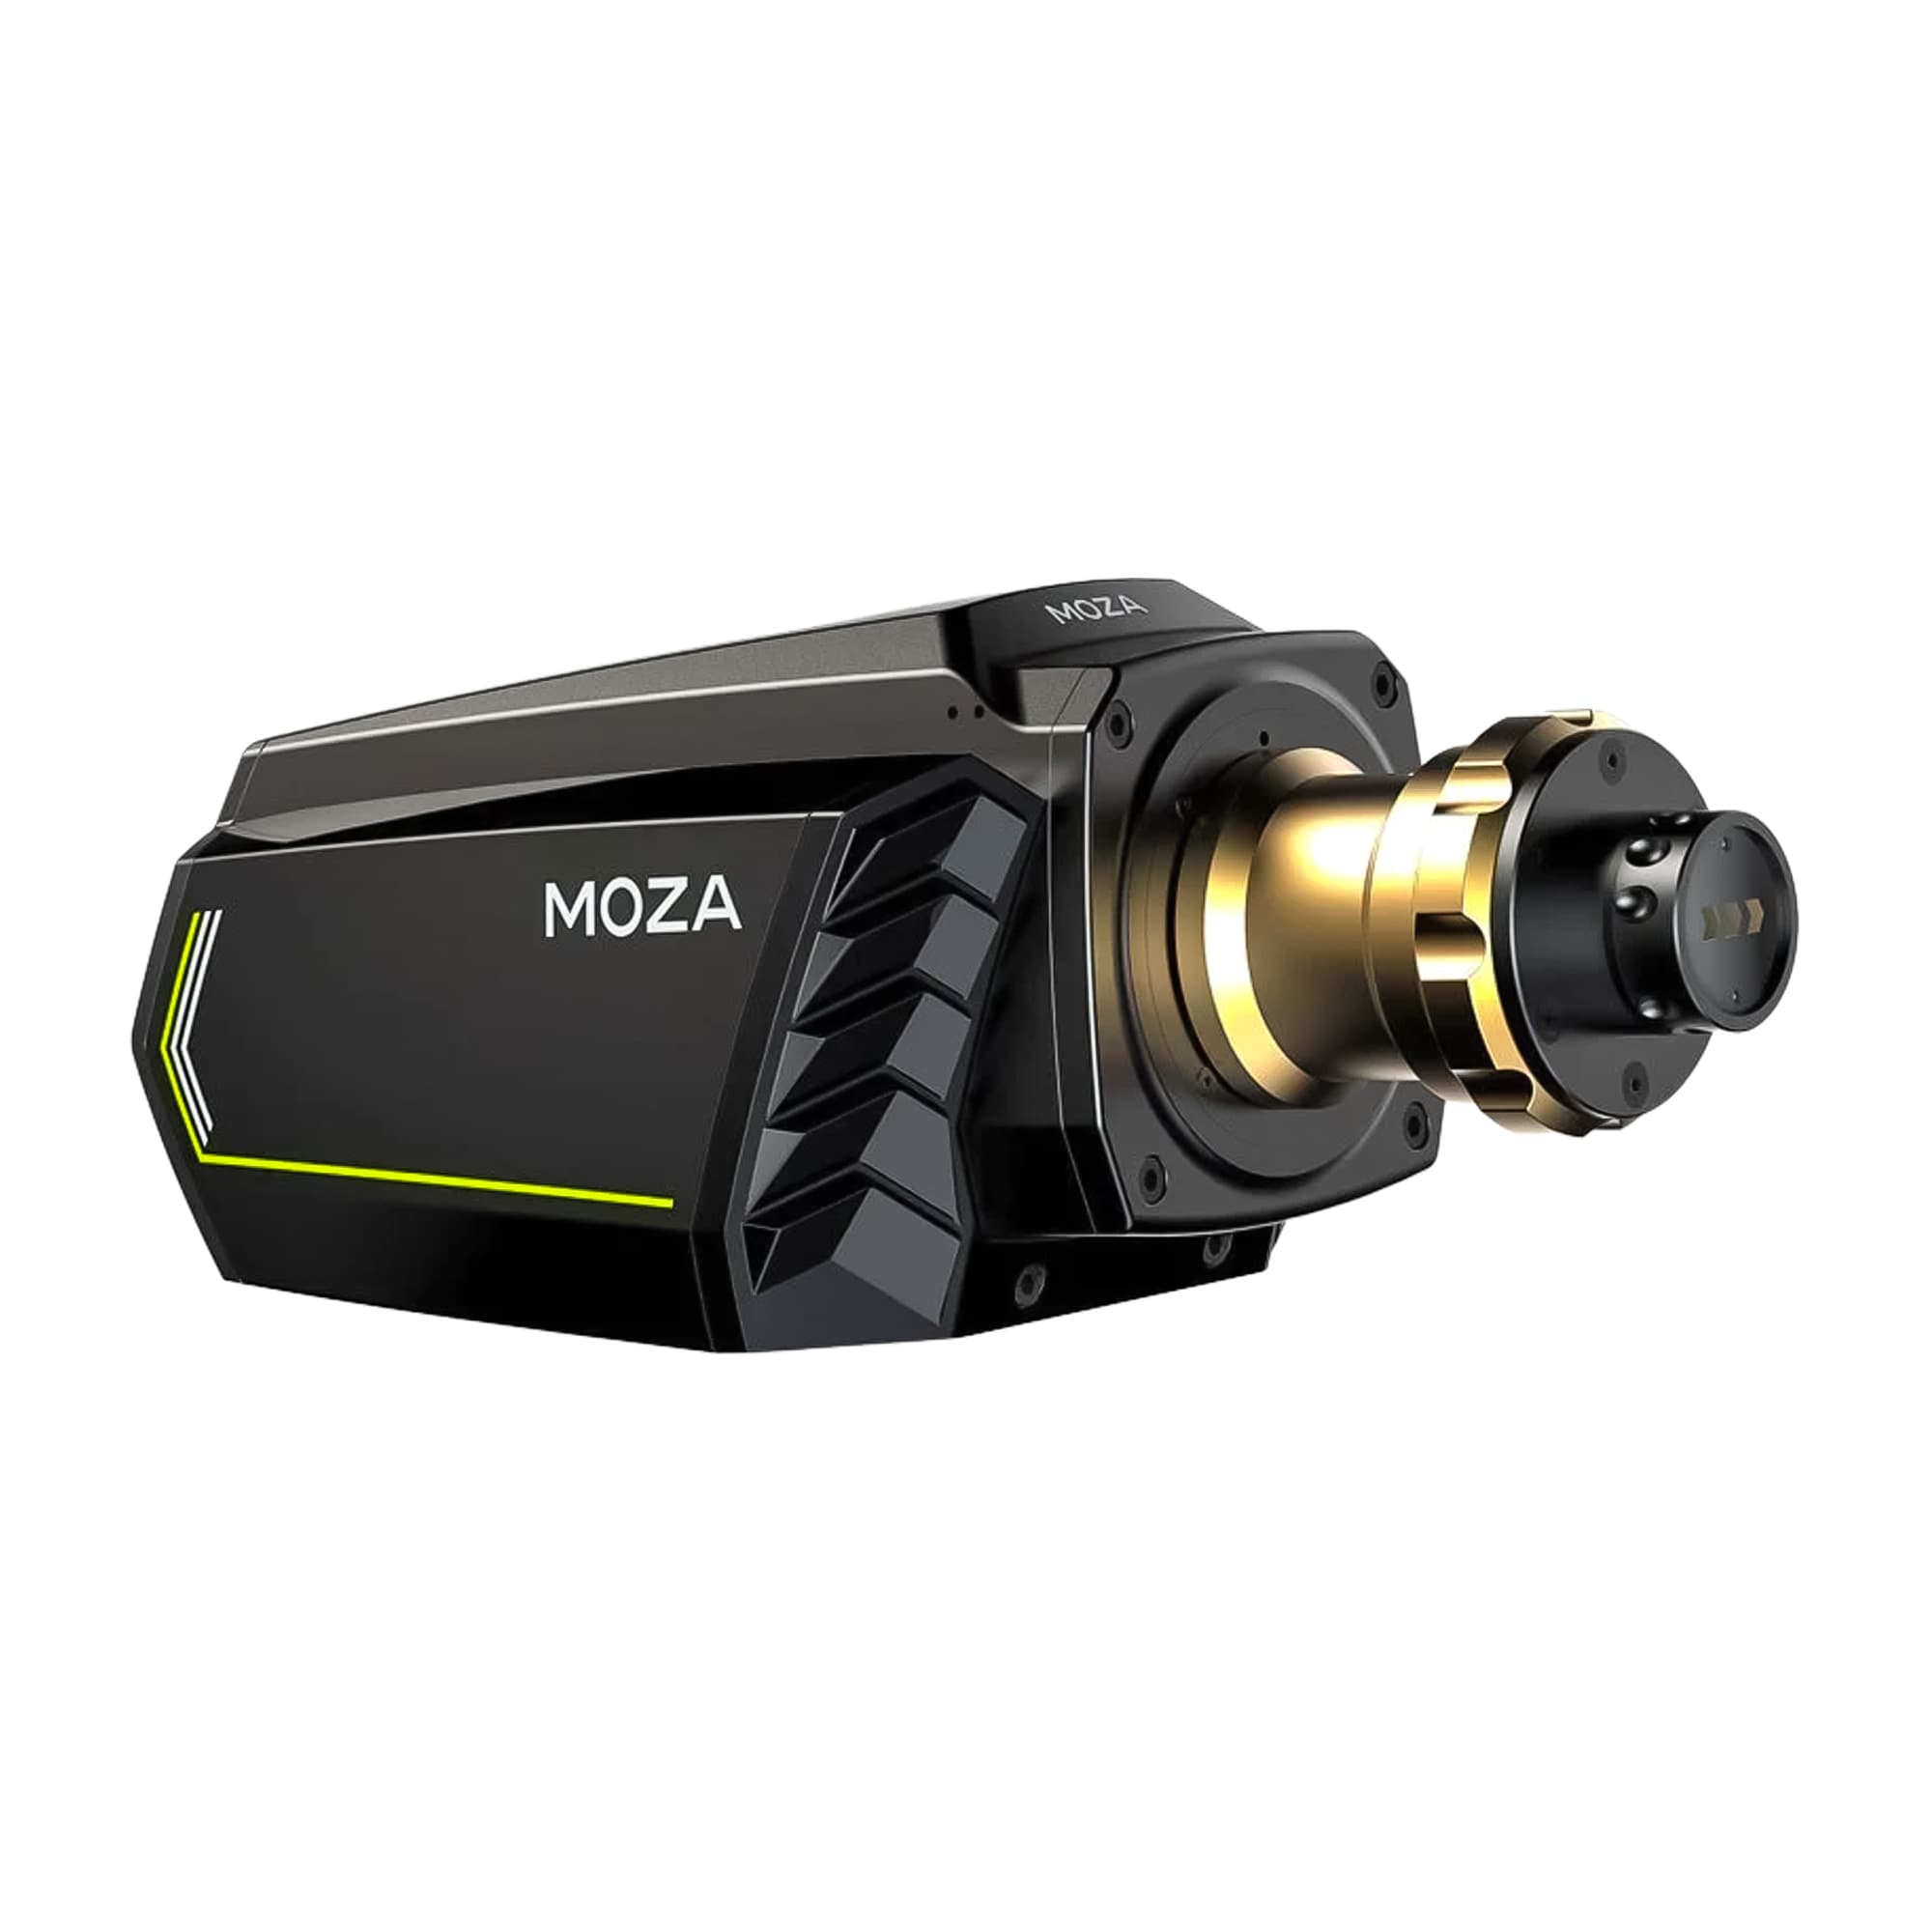 MOZA R21 Direct Drive Wheelbase